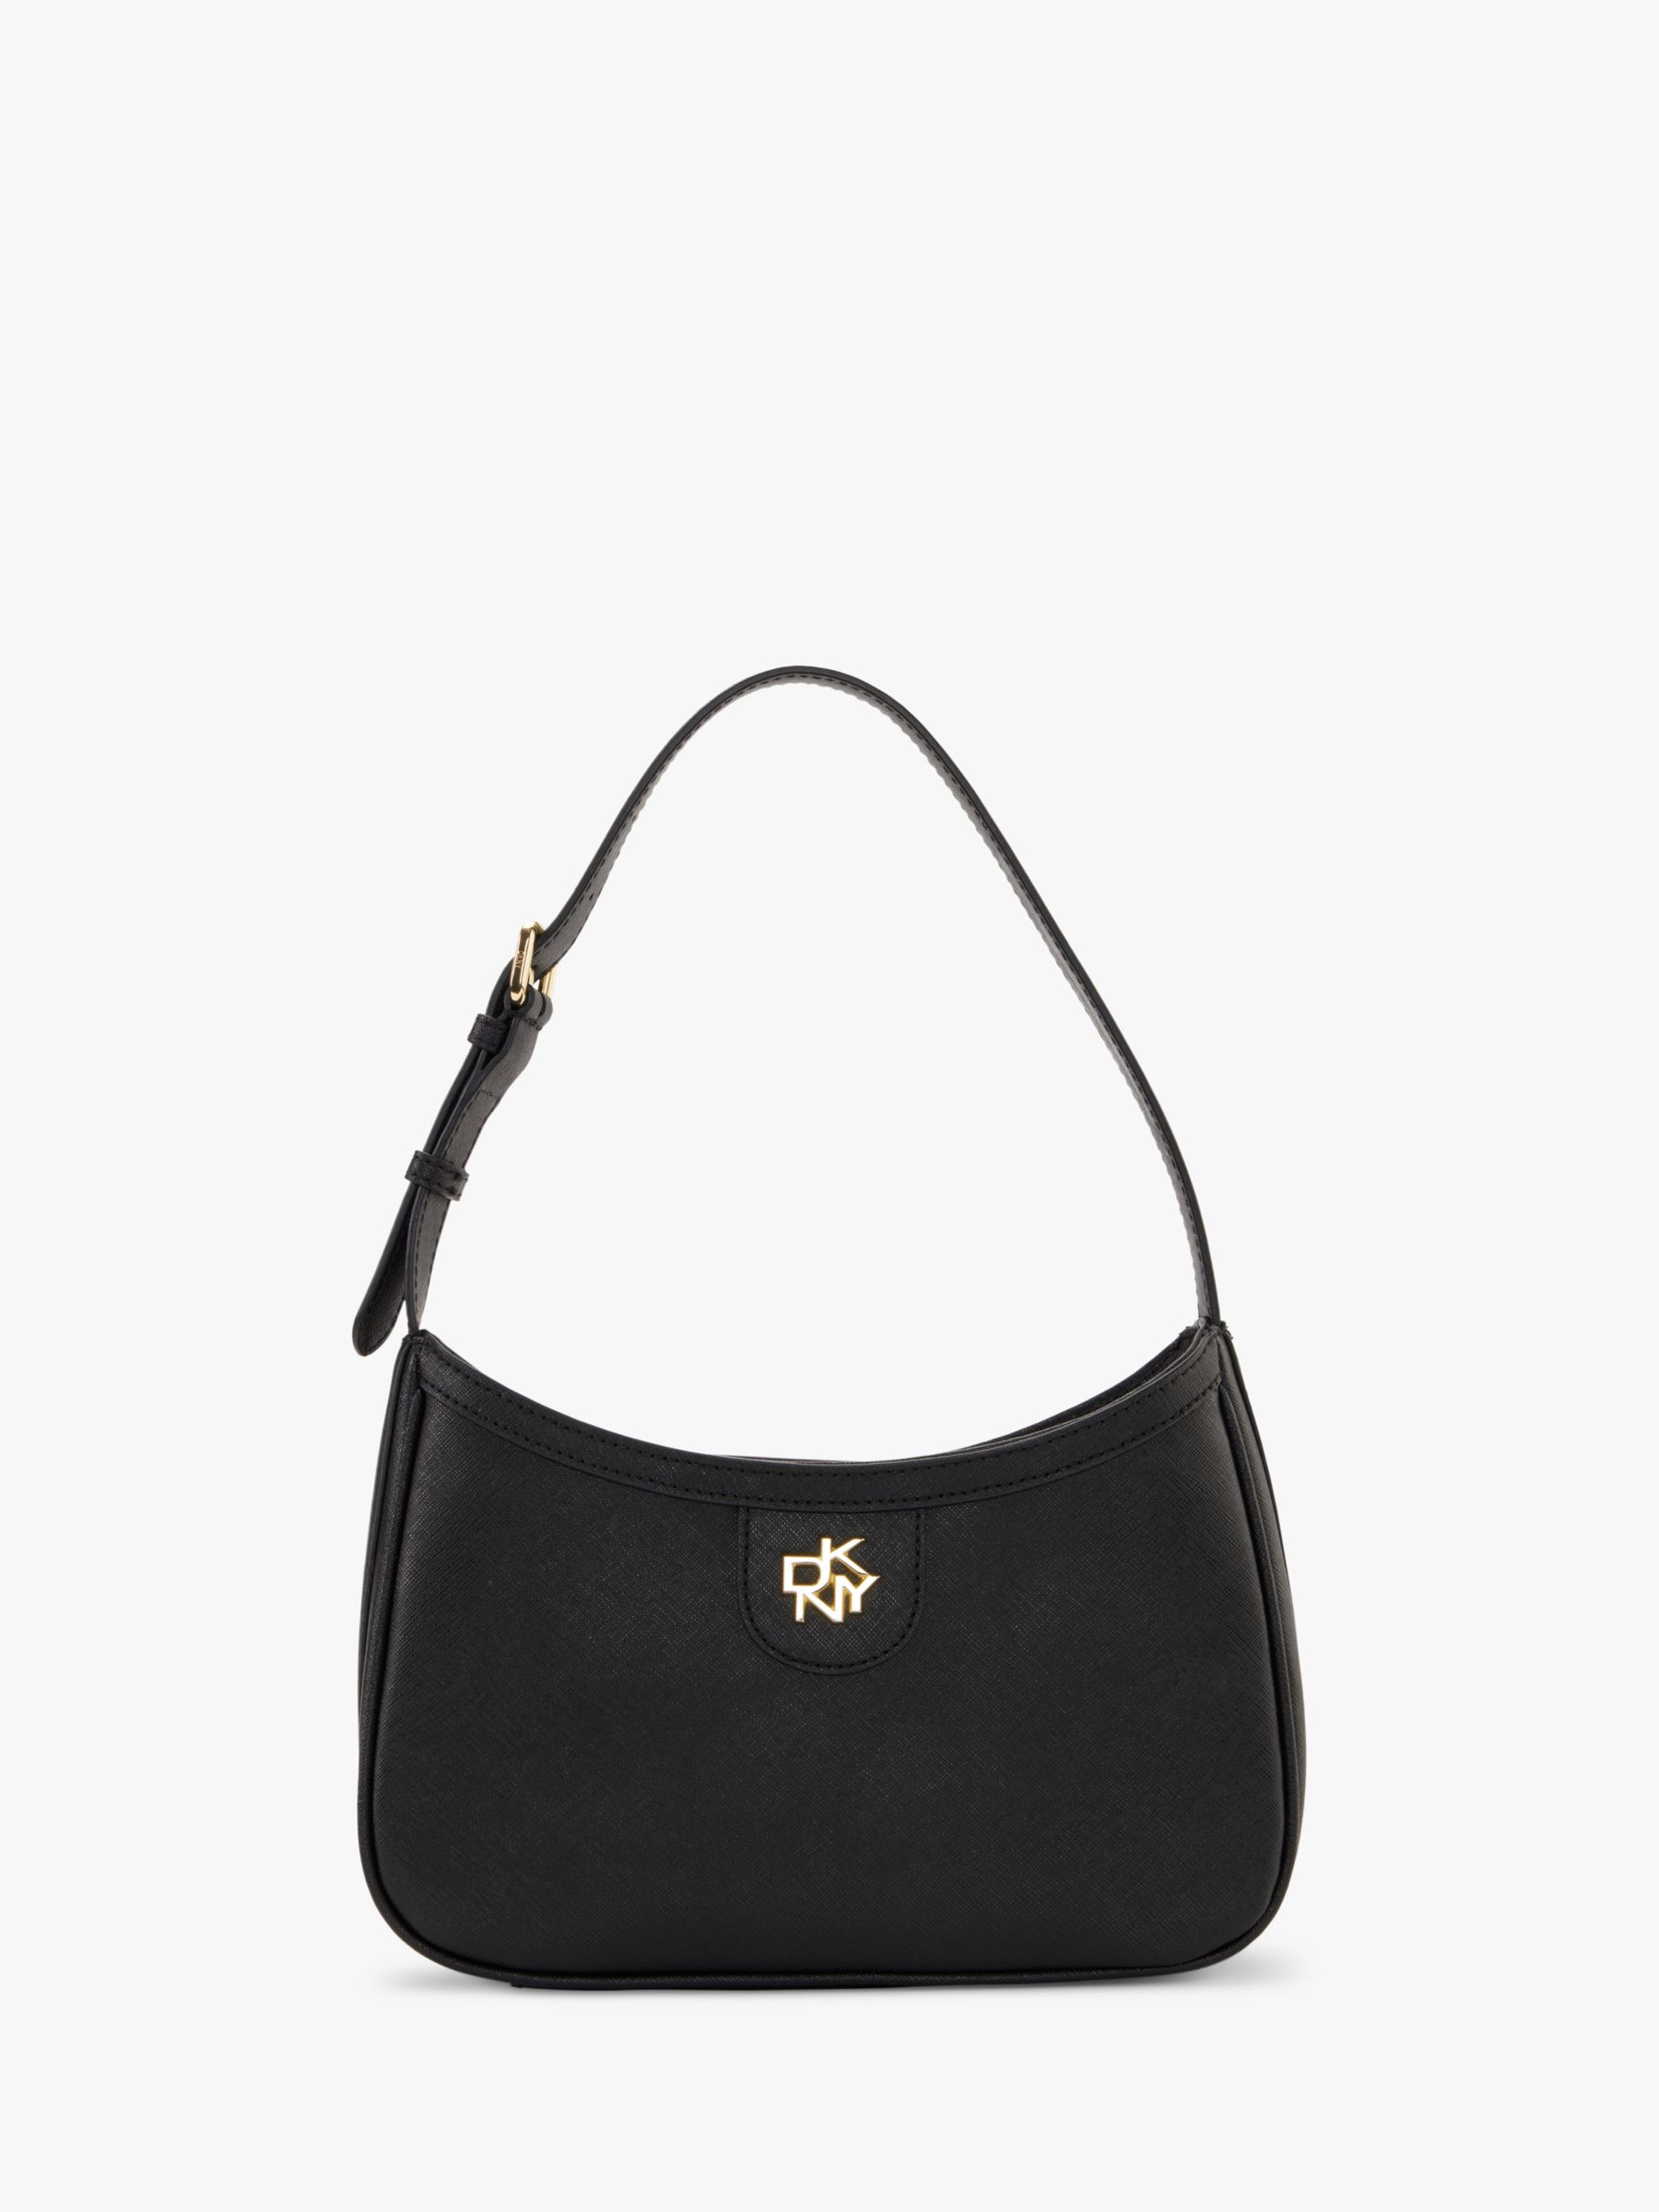 DKNY Carol Leather Demi Shoulder Bag, Black/Gold at John Lewis & Partners